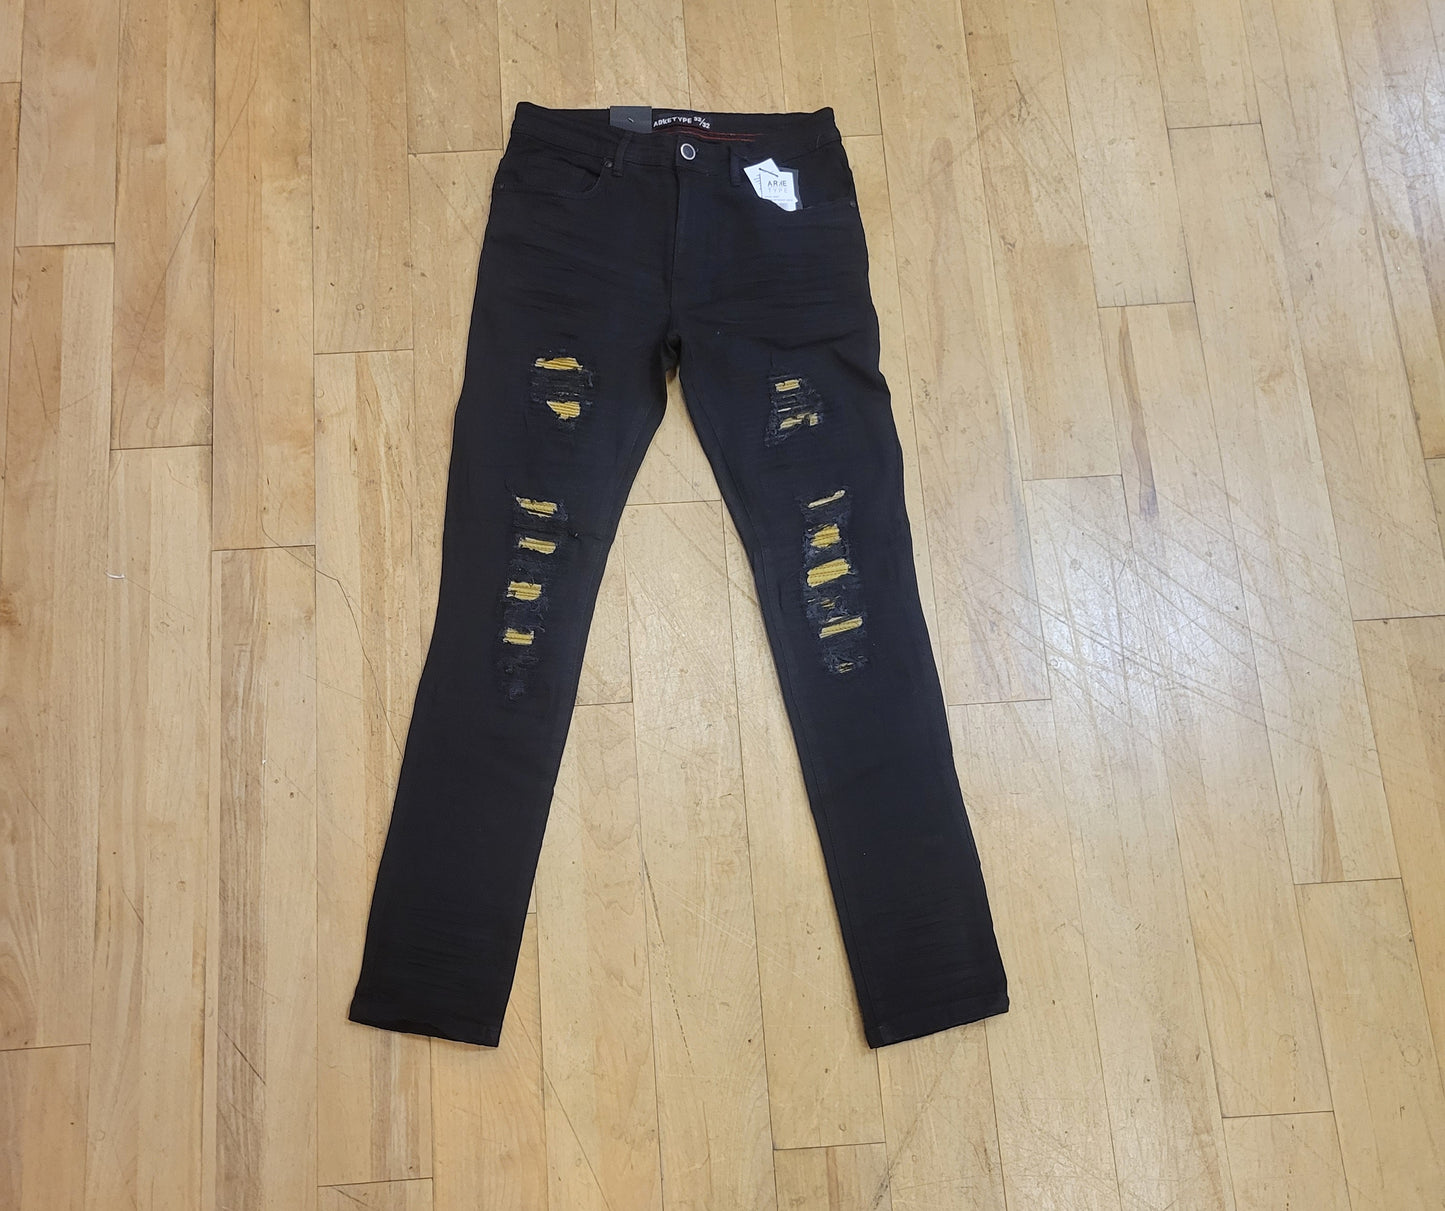 Black pants w/Gold